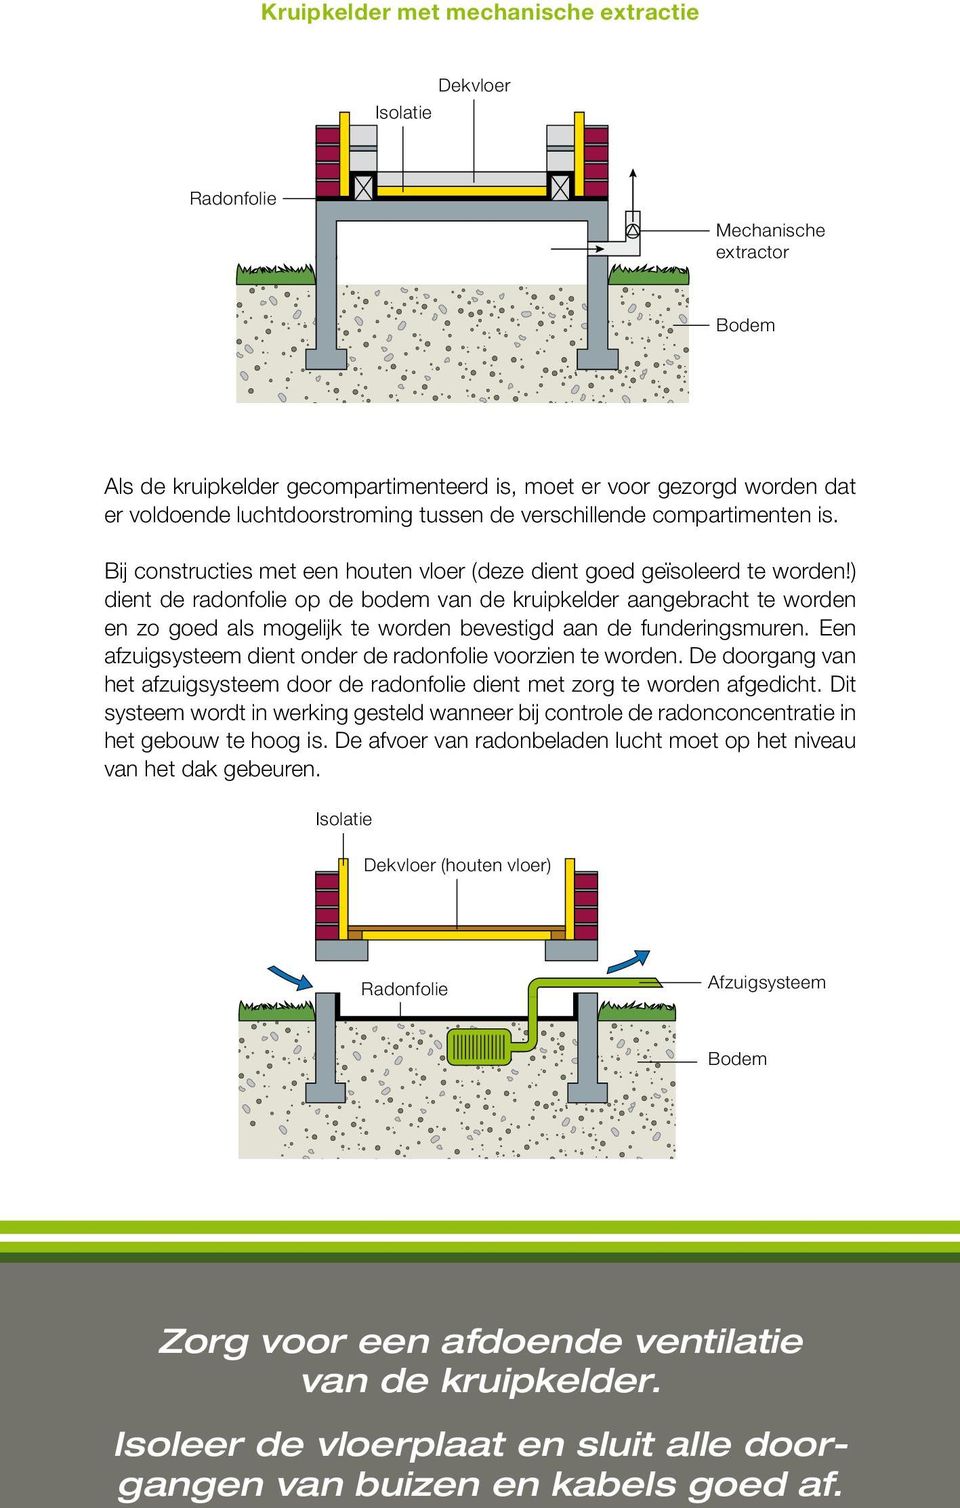 ) dient de radonfolie op de bodem van de kruipkelder aangebracht te worden en zo goed als mogelijk te worden bevestigd aan de funderingsmuren.